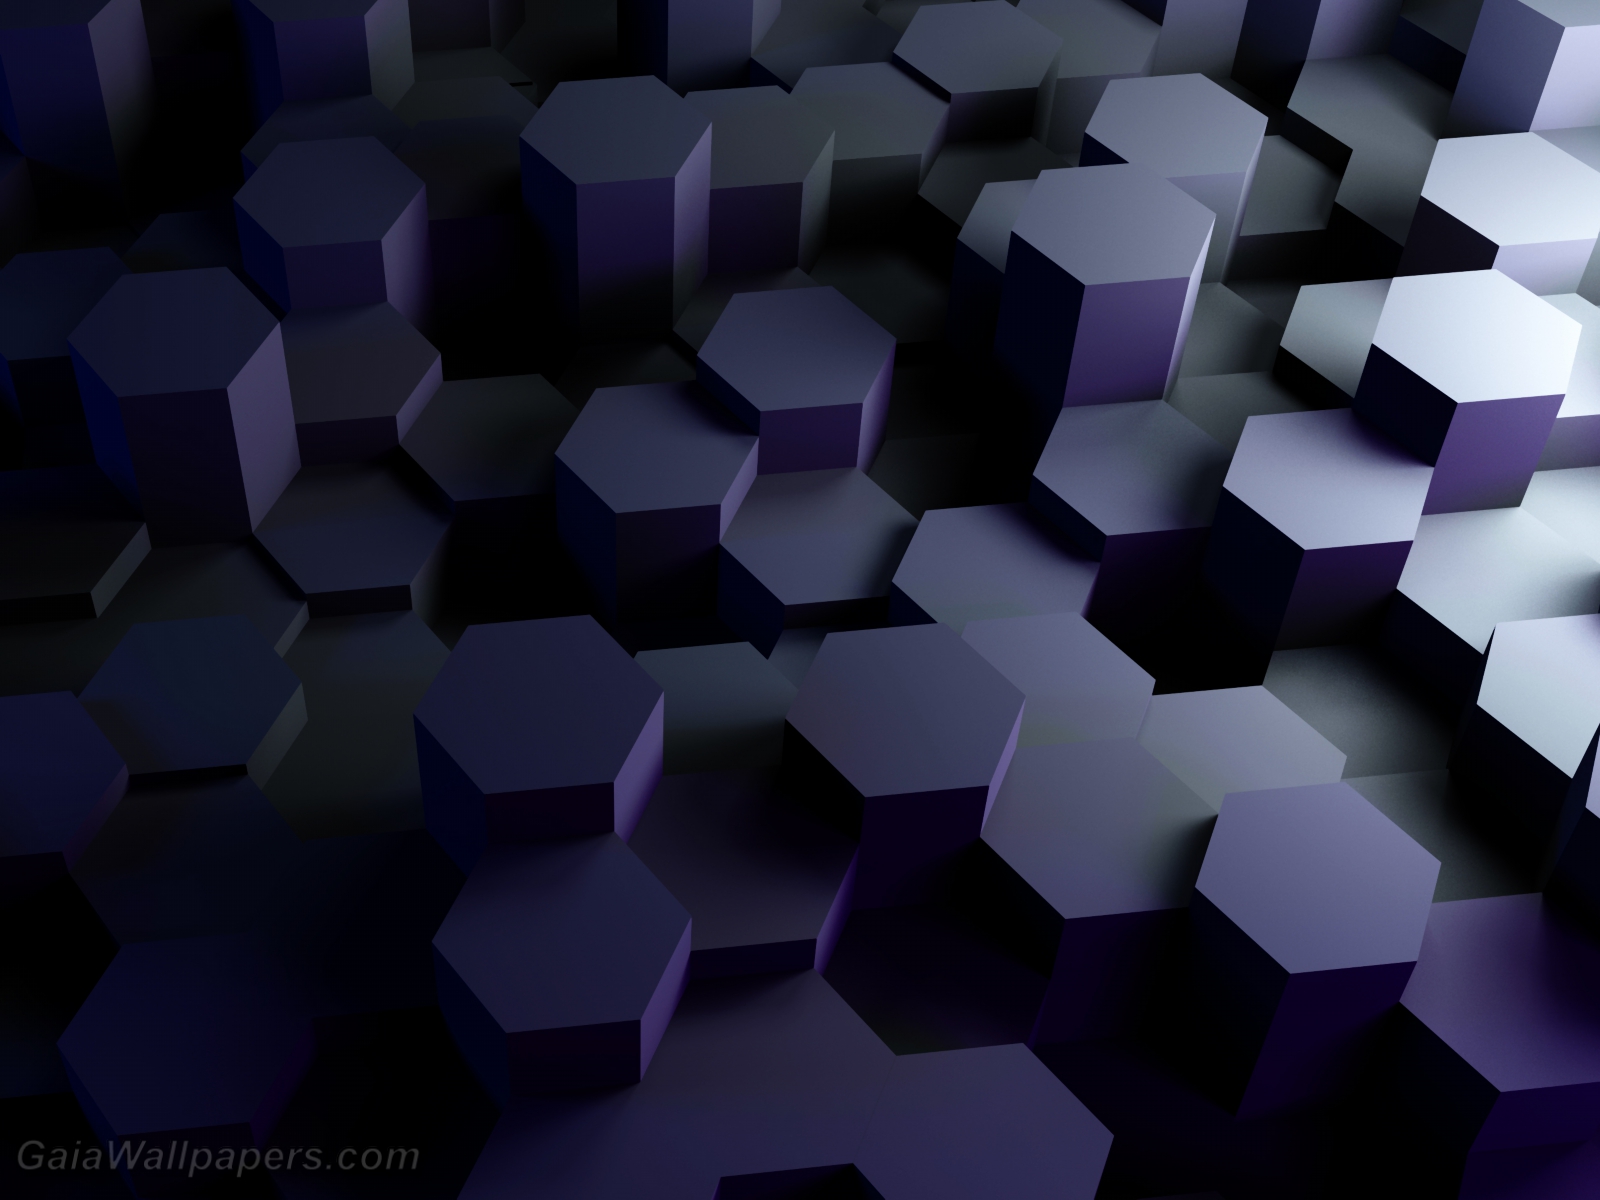 Colonnes d'hexagones entre l'ombre et la lumière - Fonds d'écran gratuits